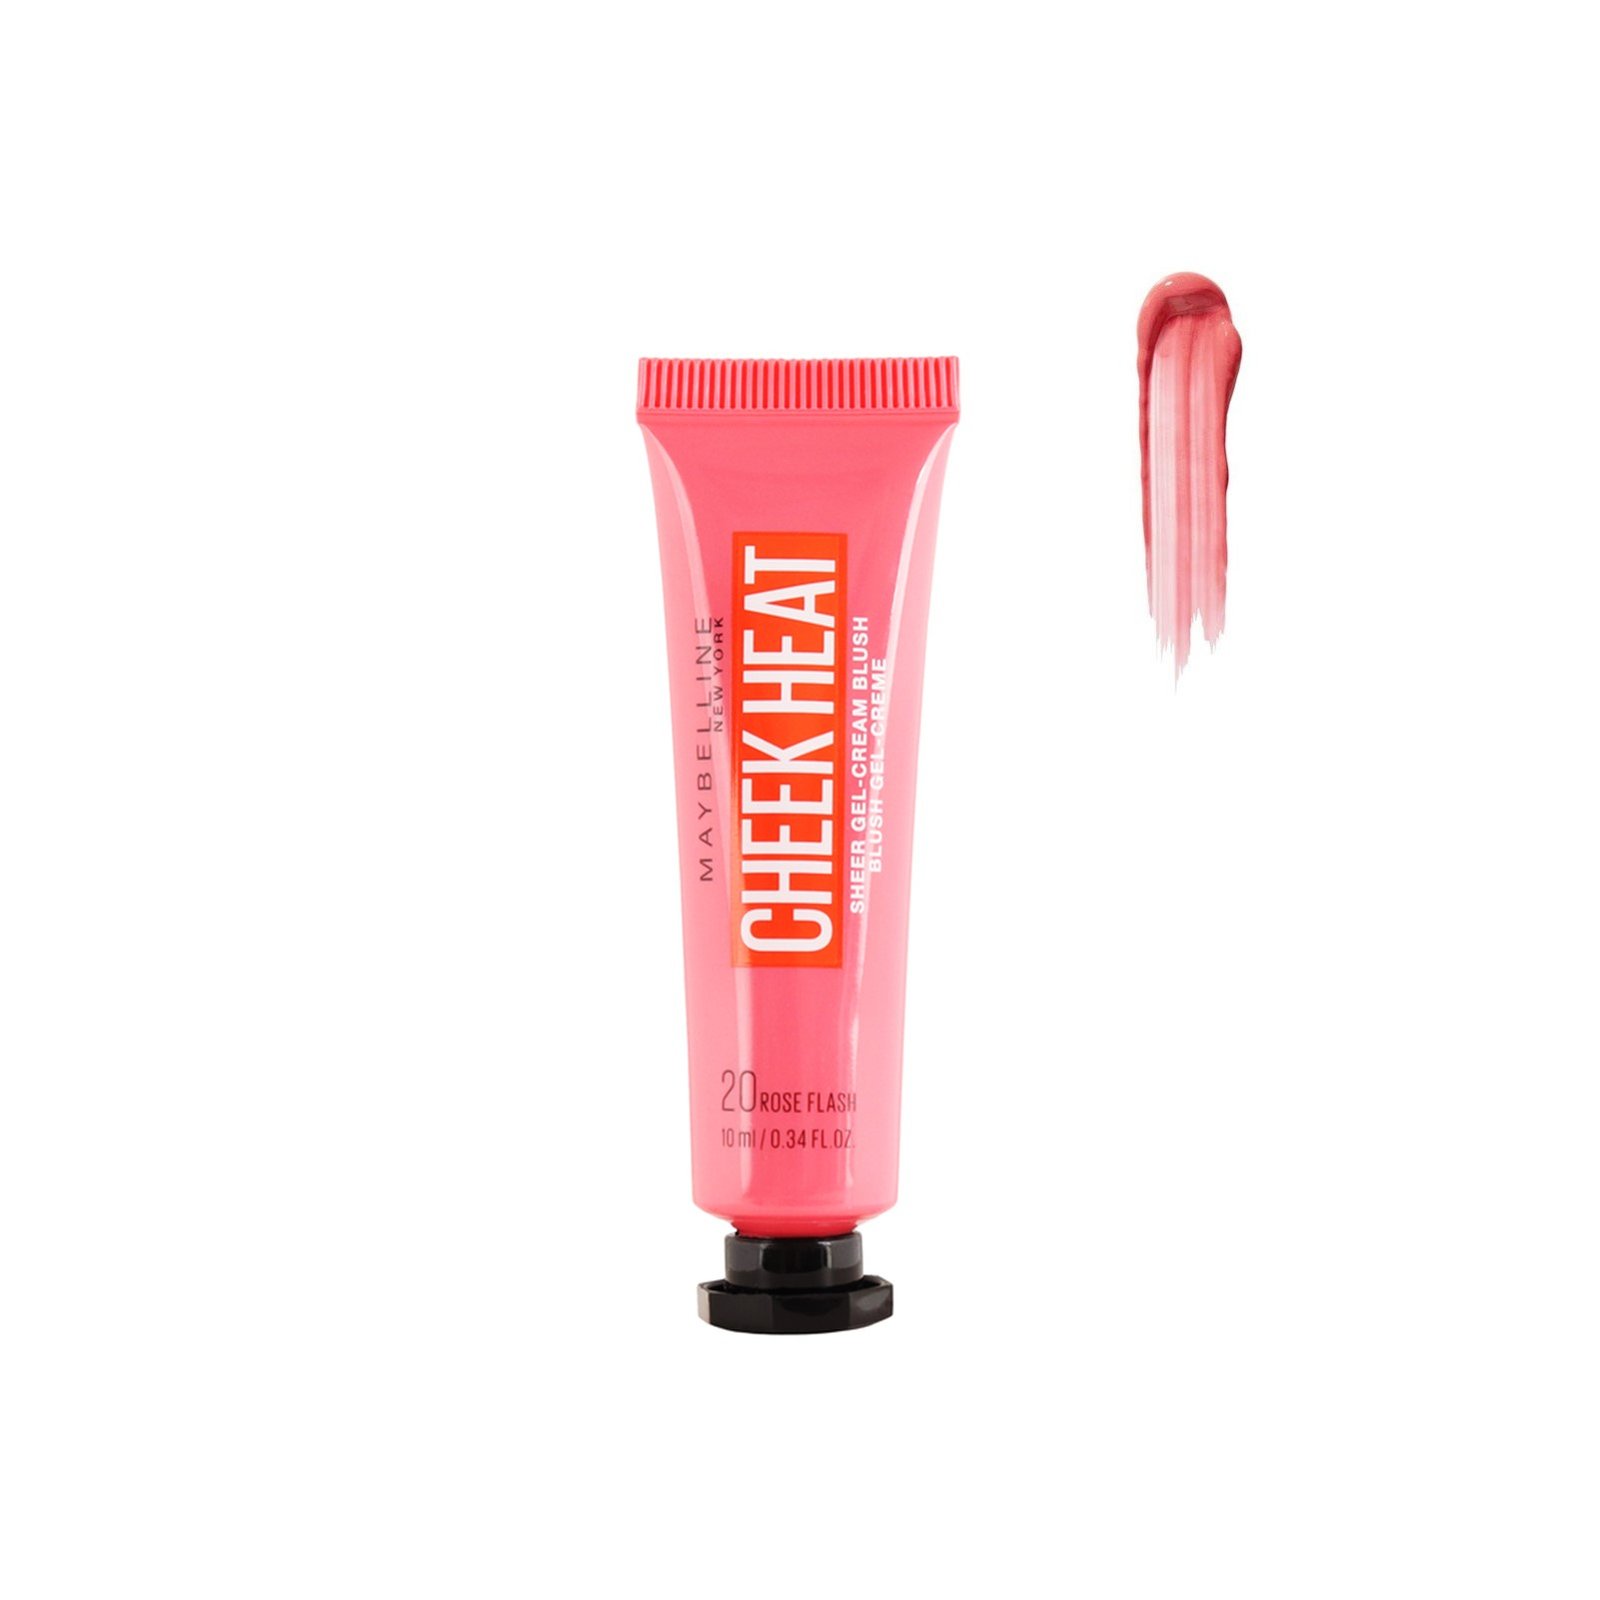 Maybelline Cheek Heat Sheer Gel-Cream Blush 20 Rose Flash 10ml (0.34 fl oz)